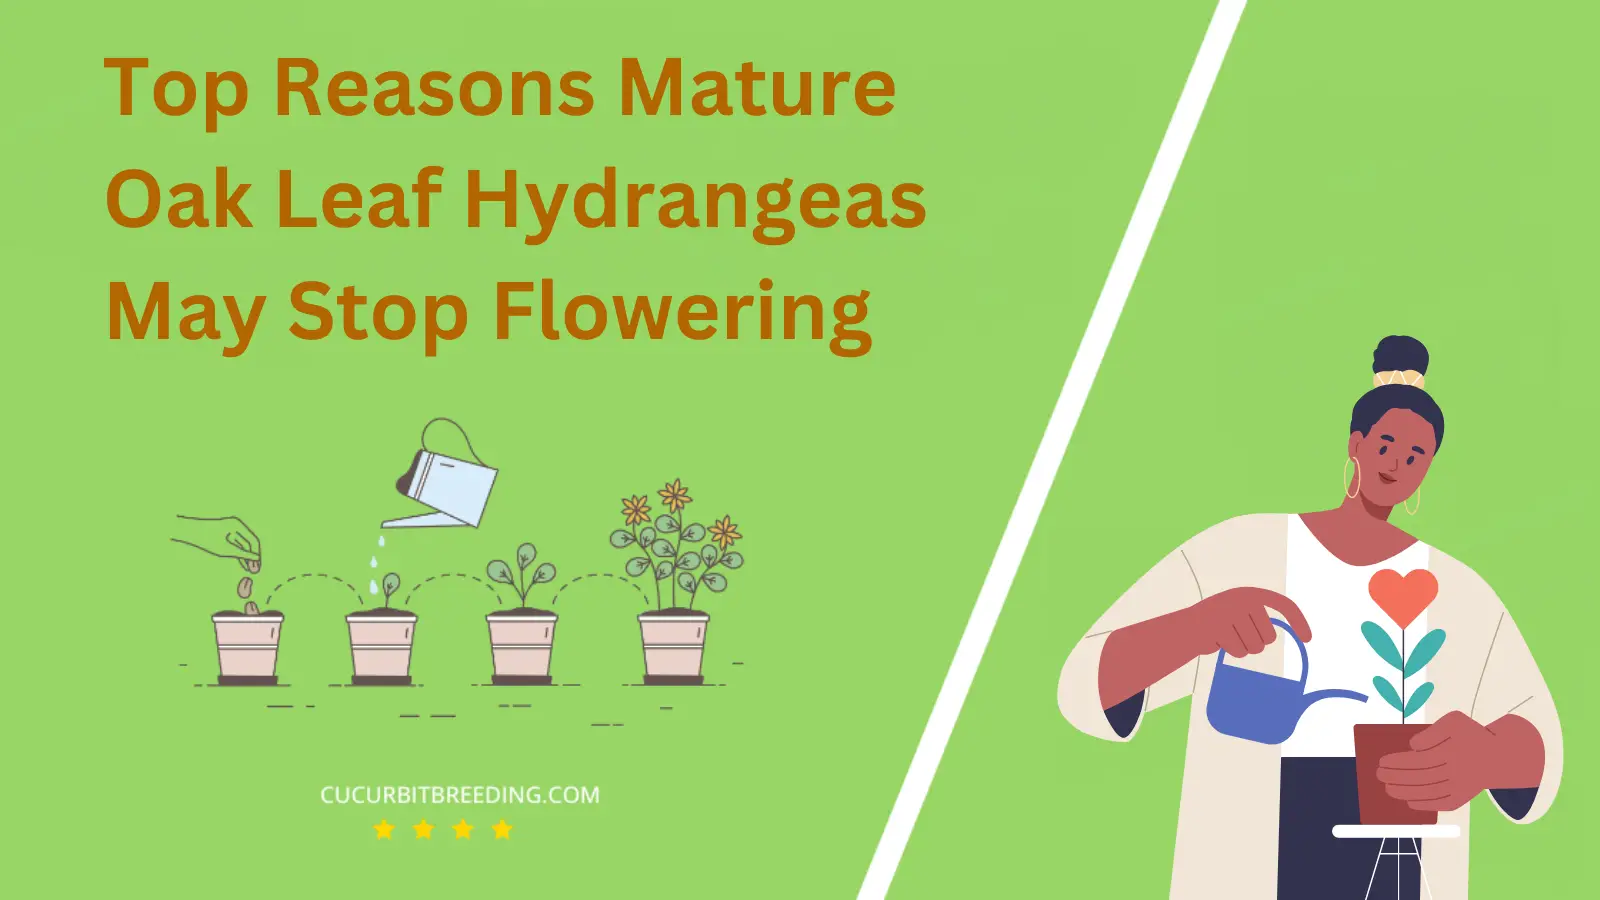 Top Reasons Mature Oak Leaf Hydrangeas May Stop Flowering